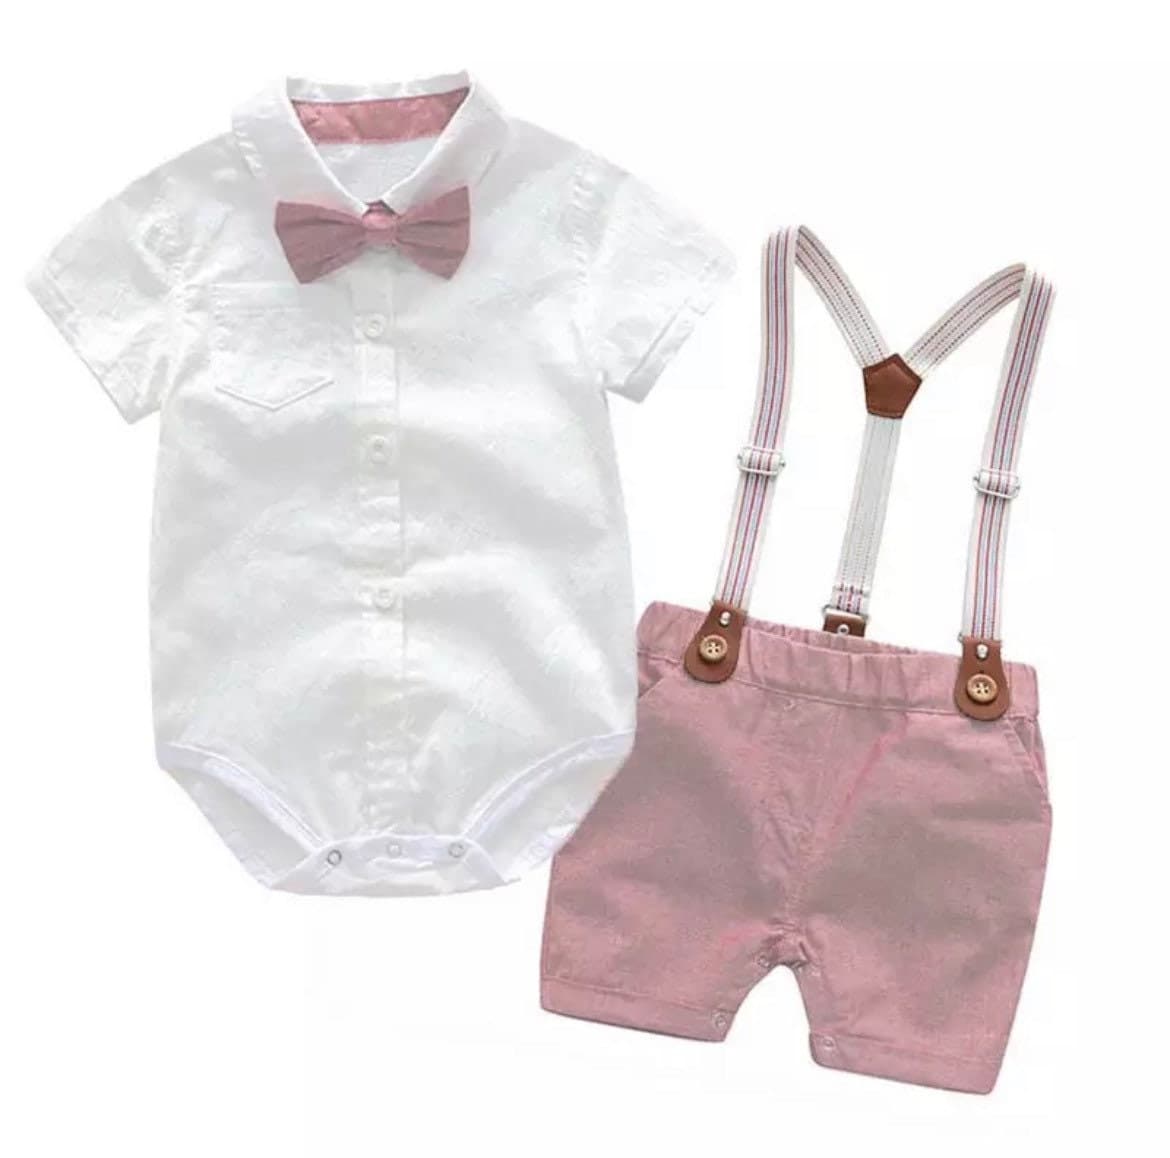 Byron Set - Baby Boy Gentleman Romper Suit Set in Newborn to 24 months.